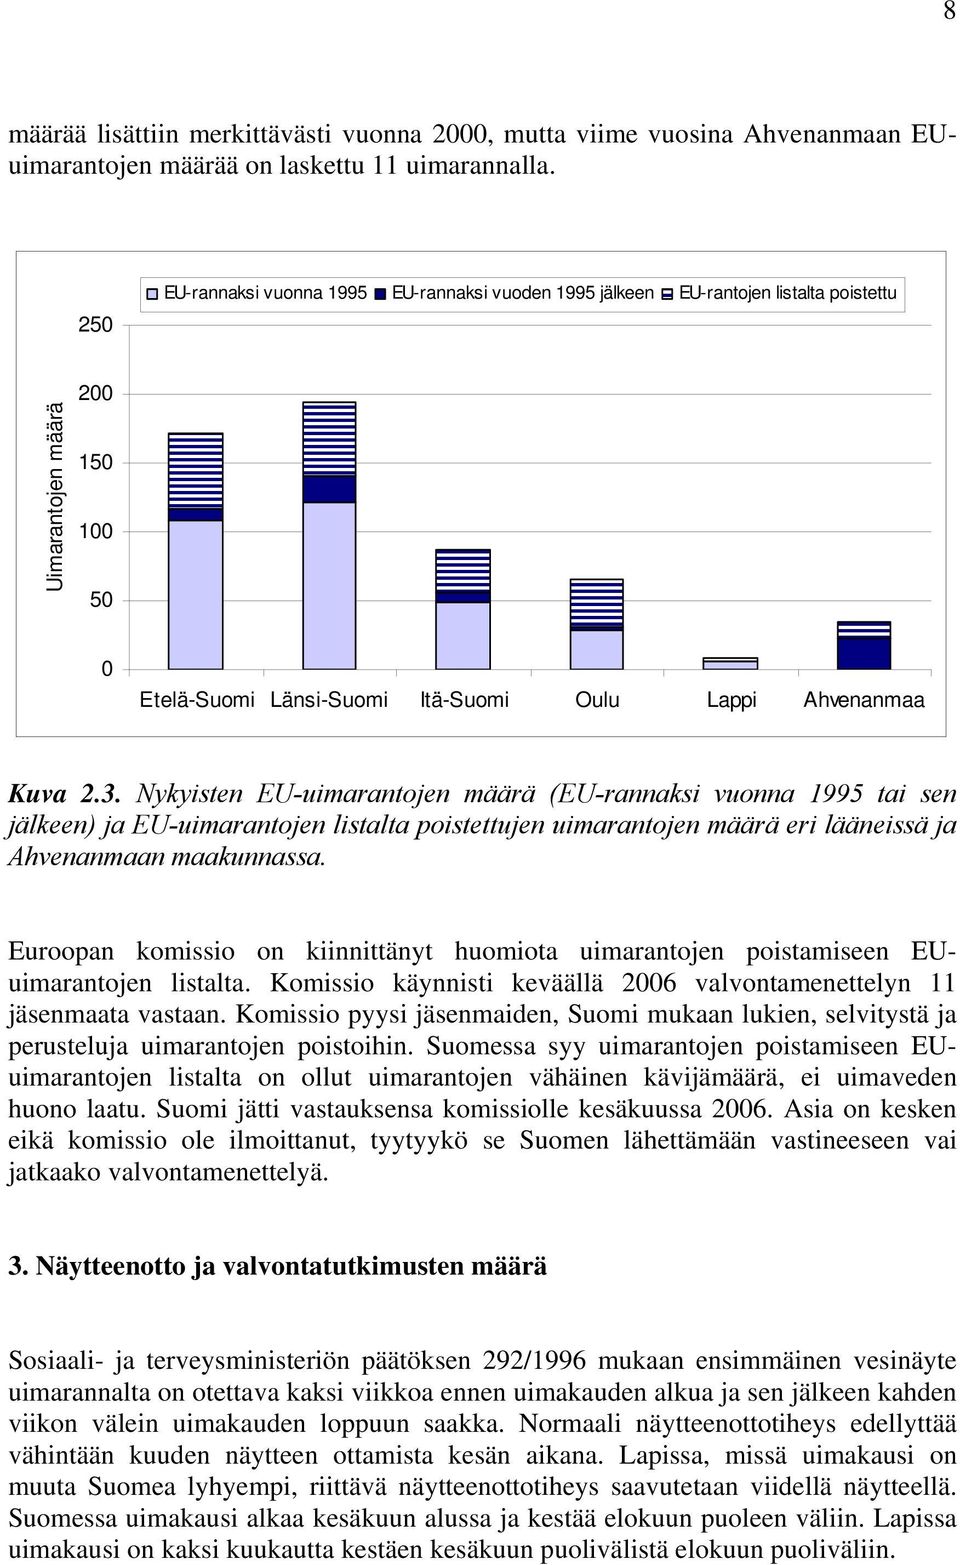 Nykyisten EU-uimarantojen määrä (EU-rannaksi vuonna 1995 tai sen jälkeen) ja EU-uimarantojen listalta poistettujen uimarantojen määrä eri lääneissä ja Ahvenanmaan maakunnassa.